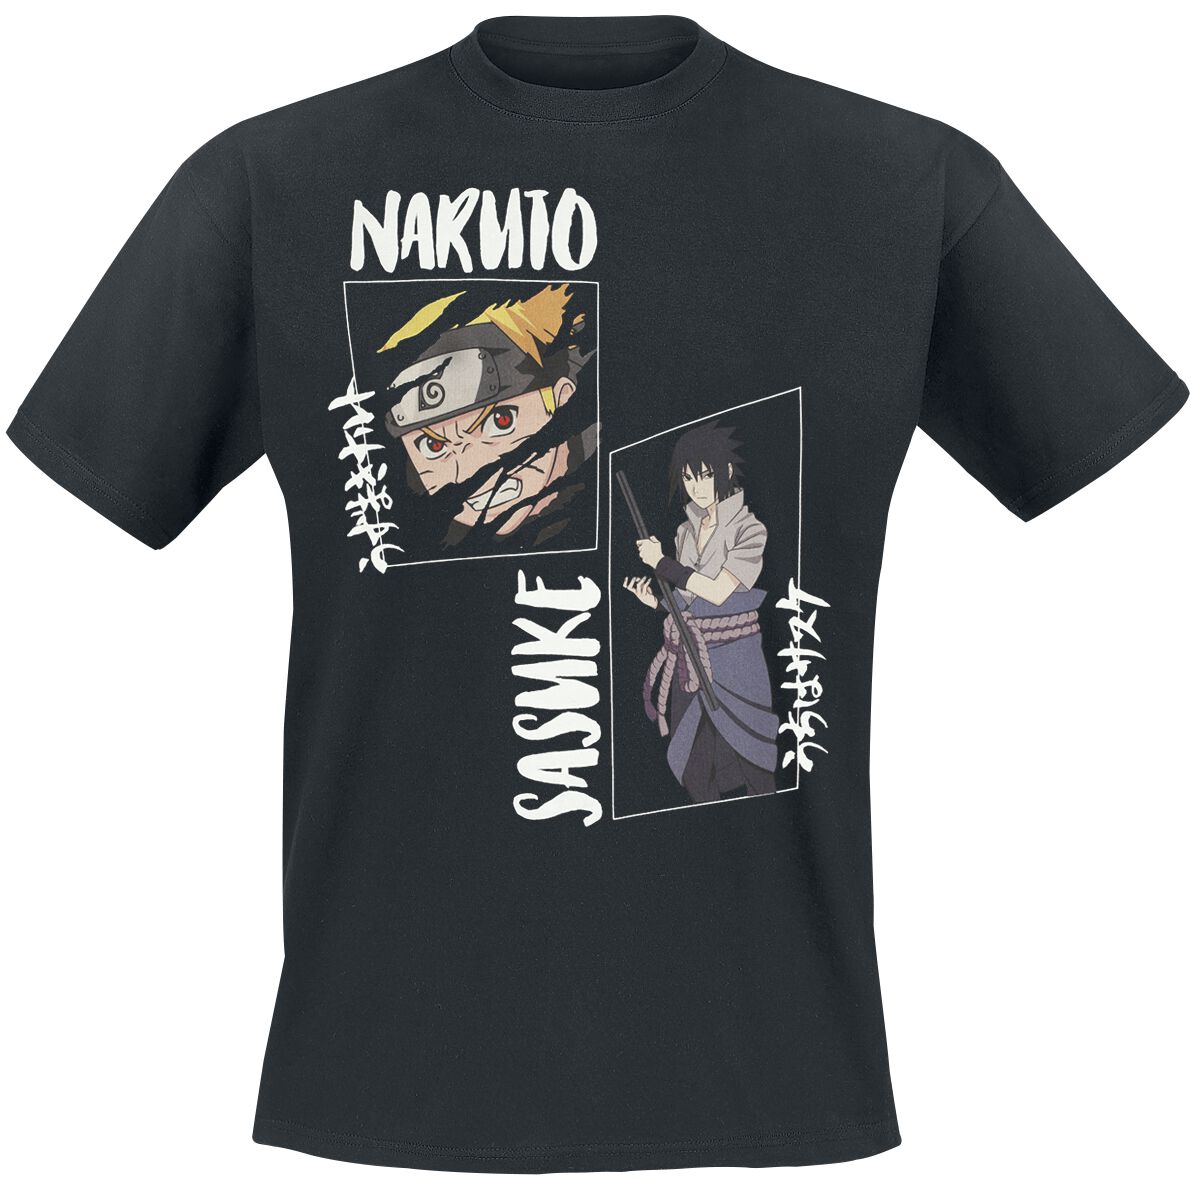 Naruto - Anime T-Shirt - Shippuden - Naruto & Sasuke - M - für Männer - Größe M - schwarz  - Lizenzierter Fanartikel